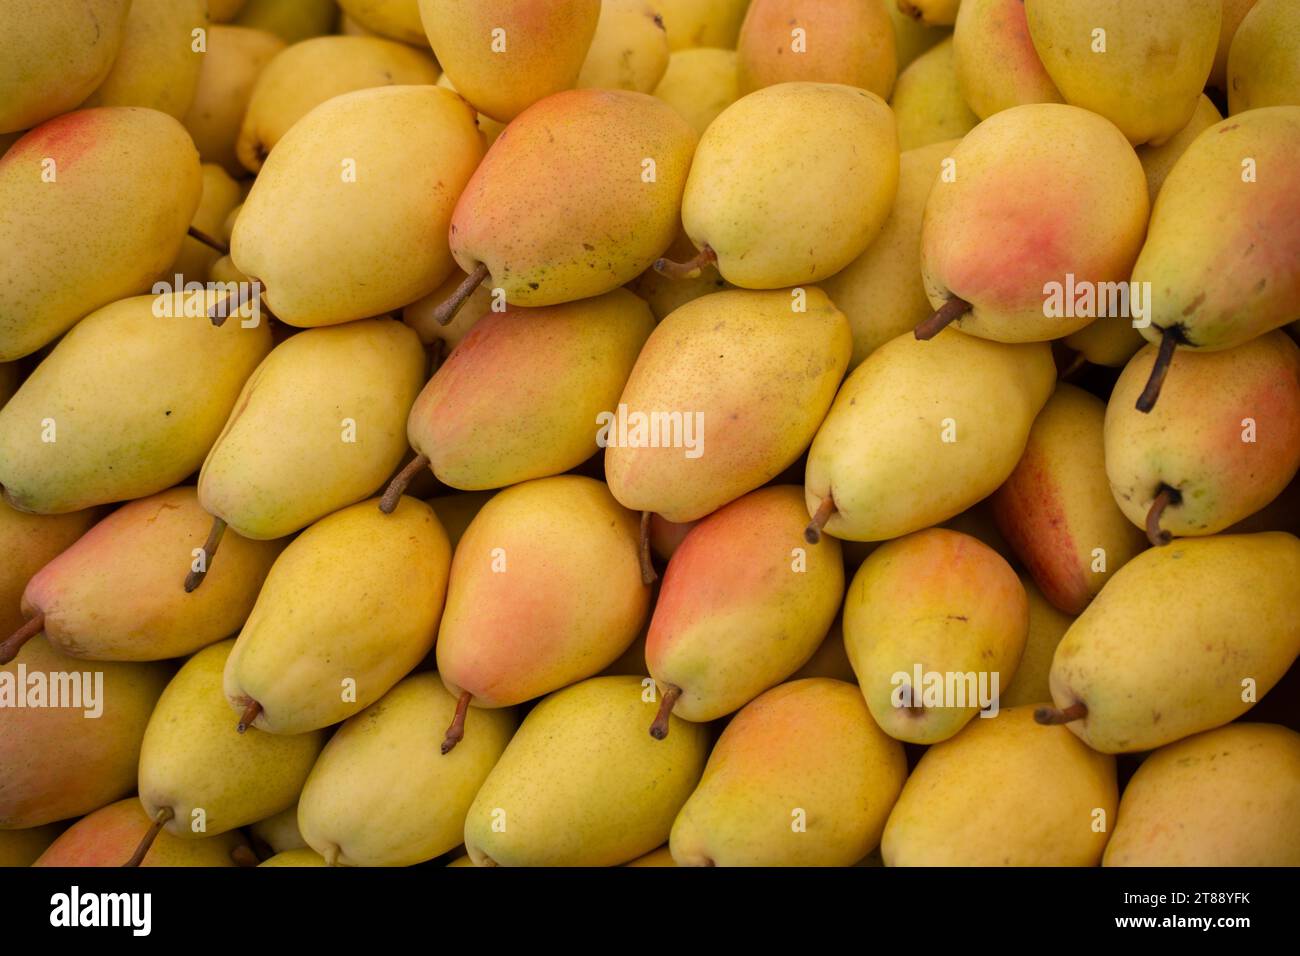 Mercato biologico pere fresche su un mercato agricolo. Immagine di pere di prodotti a base di frutta Foto Stock